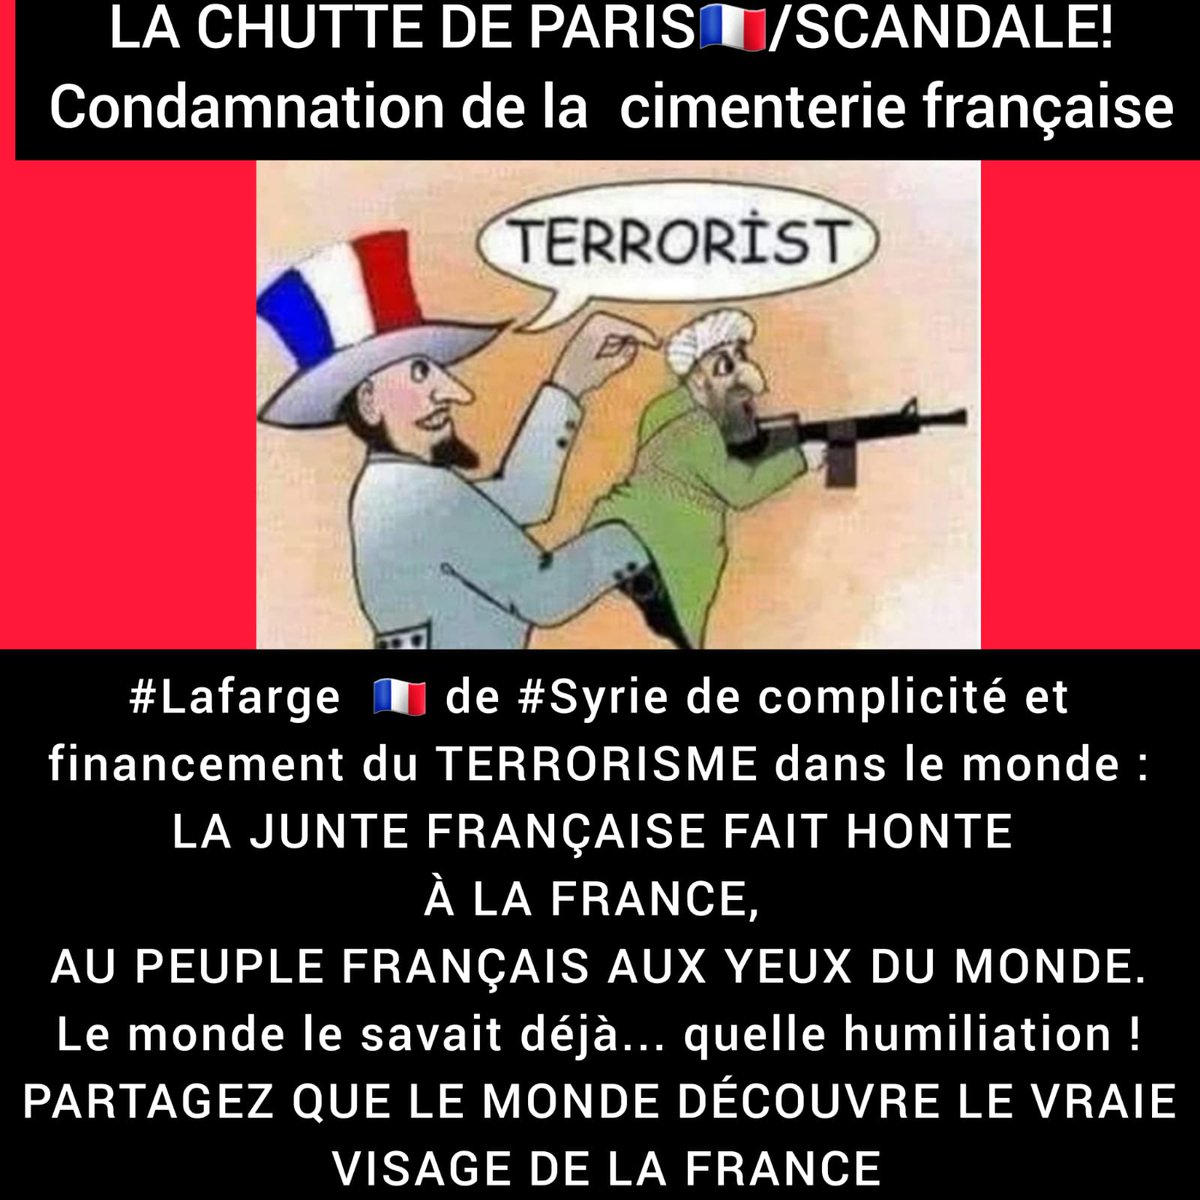 🚩LA CHUTTE DE PARIS SCANDALE! LA FRANCE/SON VRAIE VISAGE📍 Condamnation de la cimenterie française #Lafarge de #Syrie de complicité&financement du #TERRORISME au monde:#LAJUNTEFRANÇAISE FAIT HONTE À LA 🇫🇷,AU PEUPLE & AUX YEUX DU MONDE. Le monde le savait déjà Quelle humiliation!